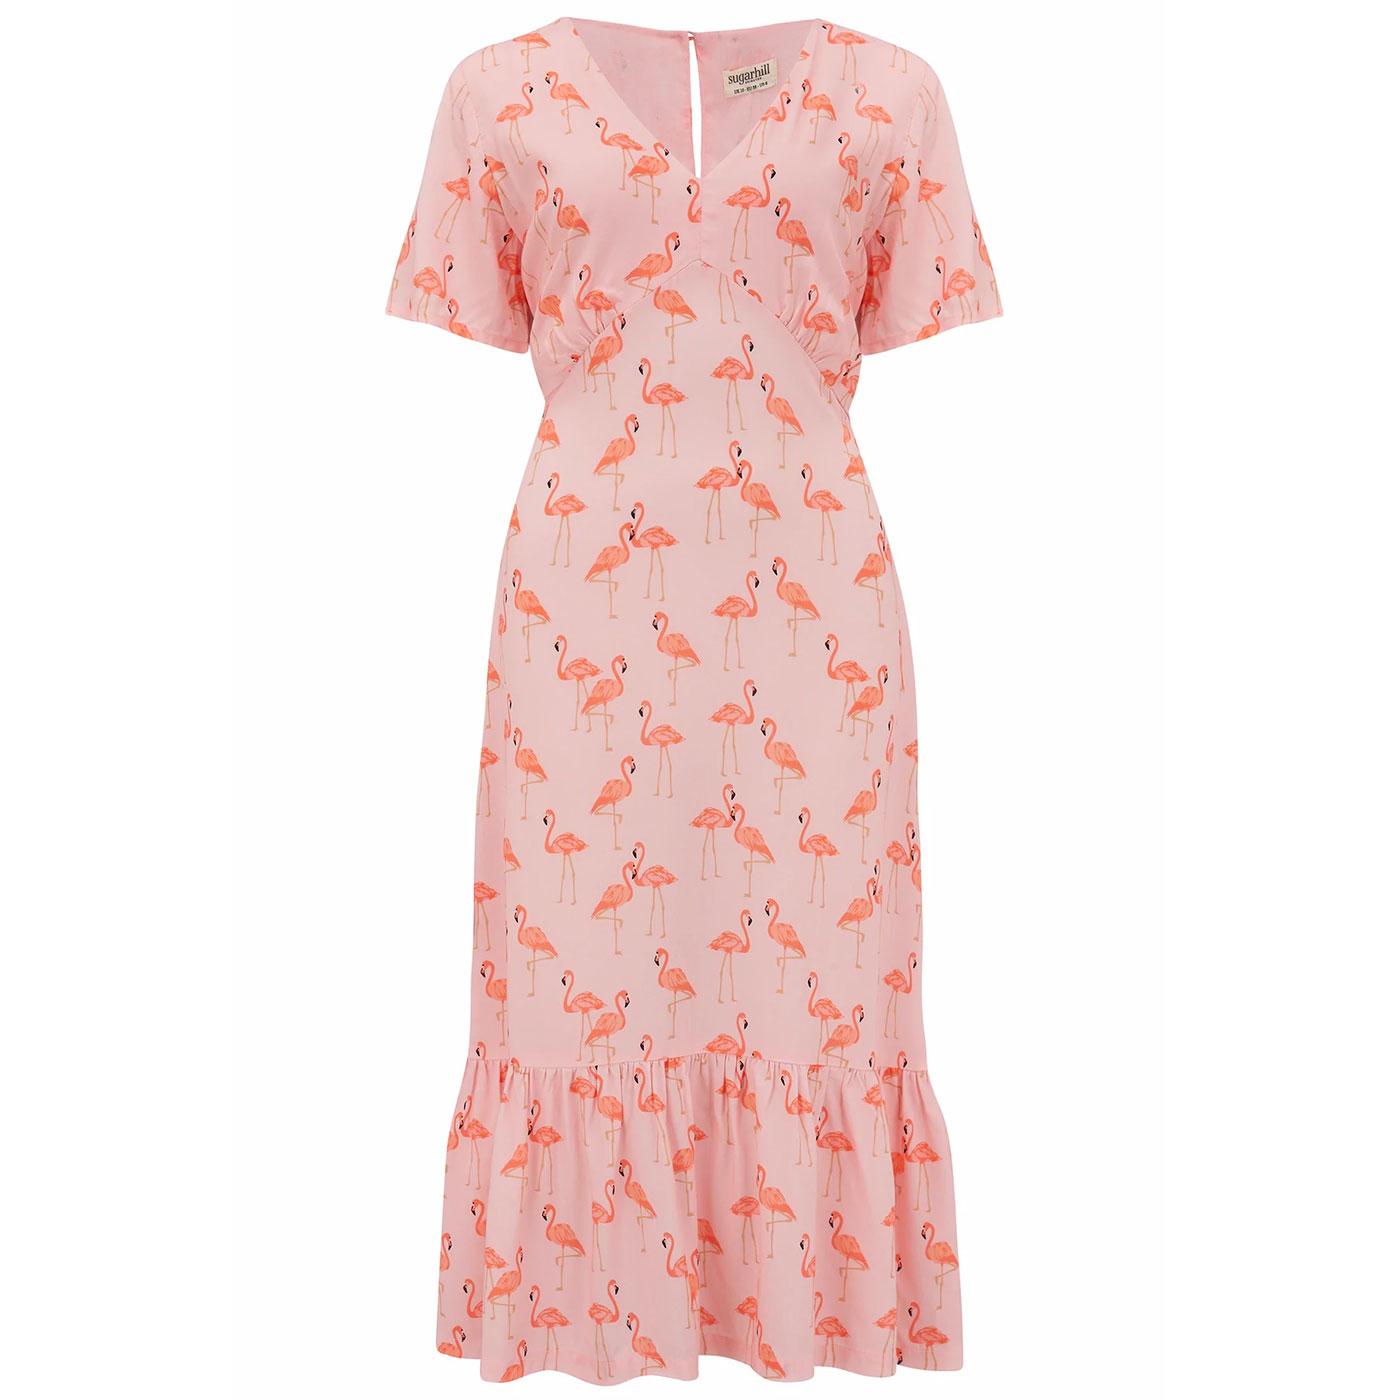 Mika SUGARHILL BRIGHTON Retro Flamingo Print Dress